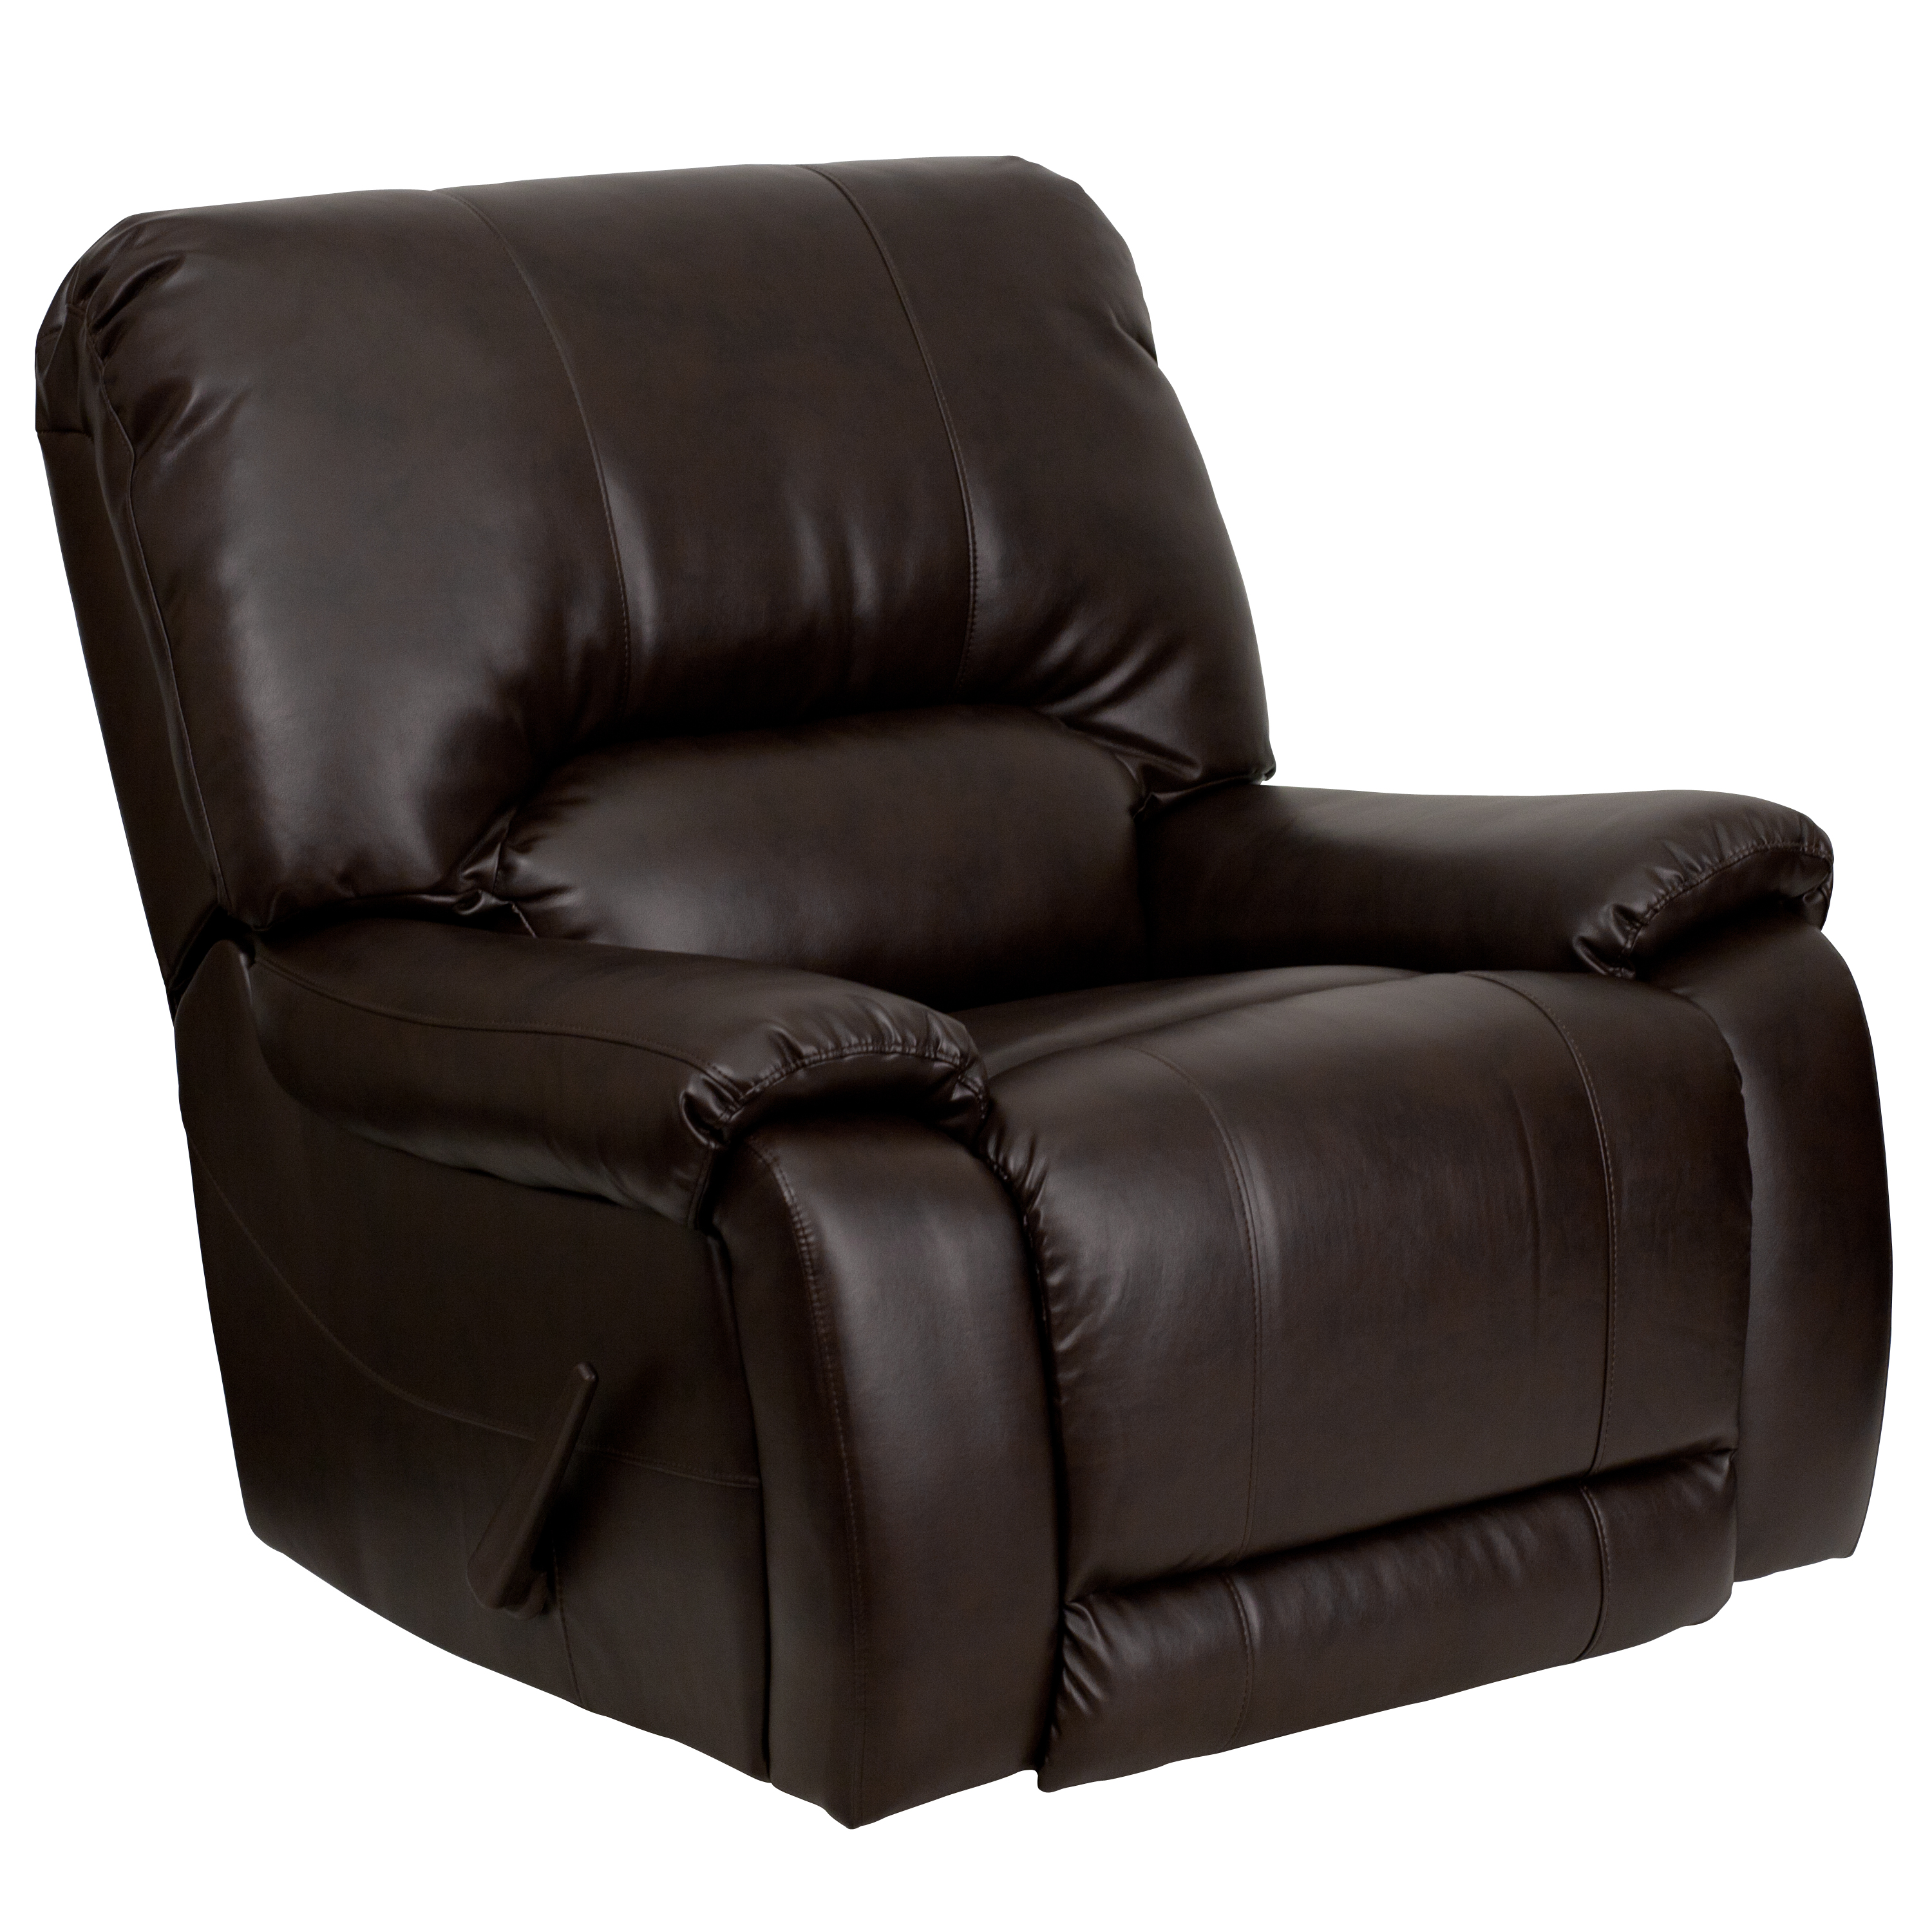 recliner rocker chair men dsc brn gg overstuffed brown leather